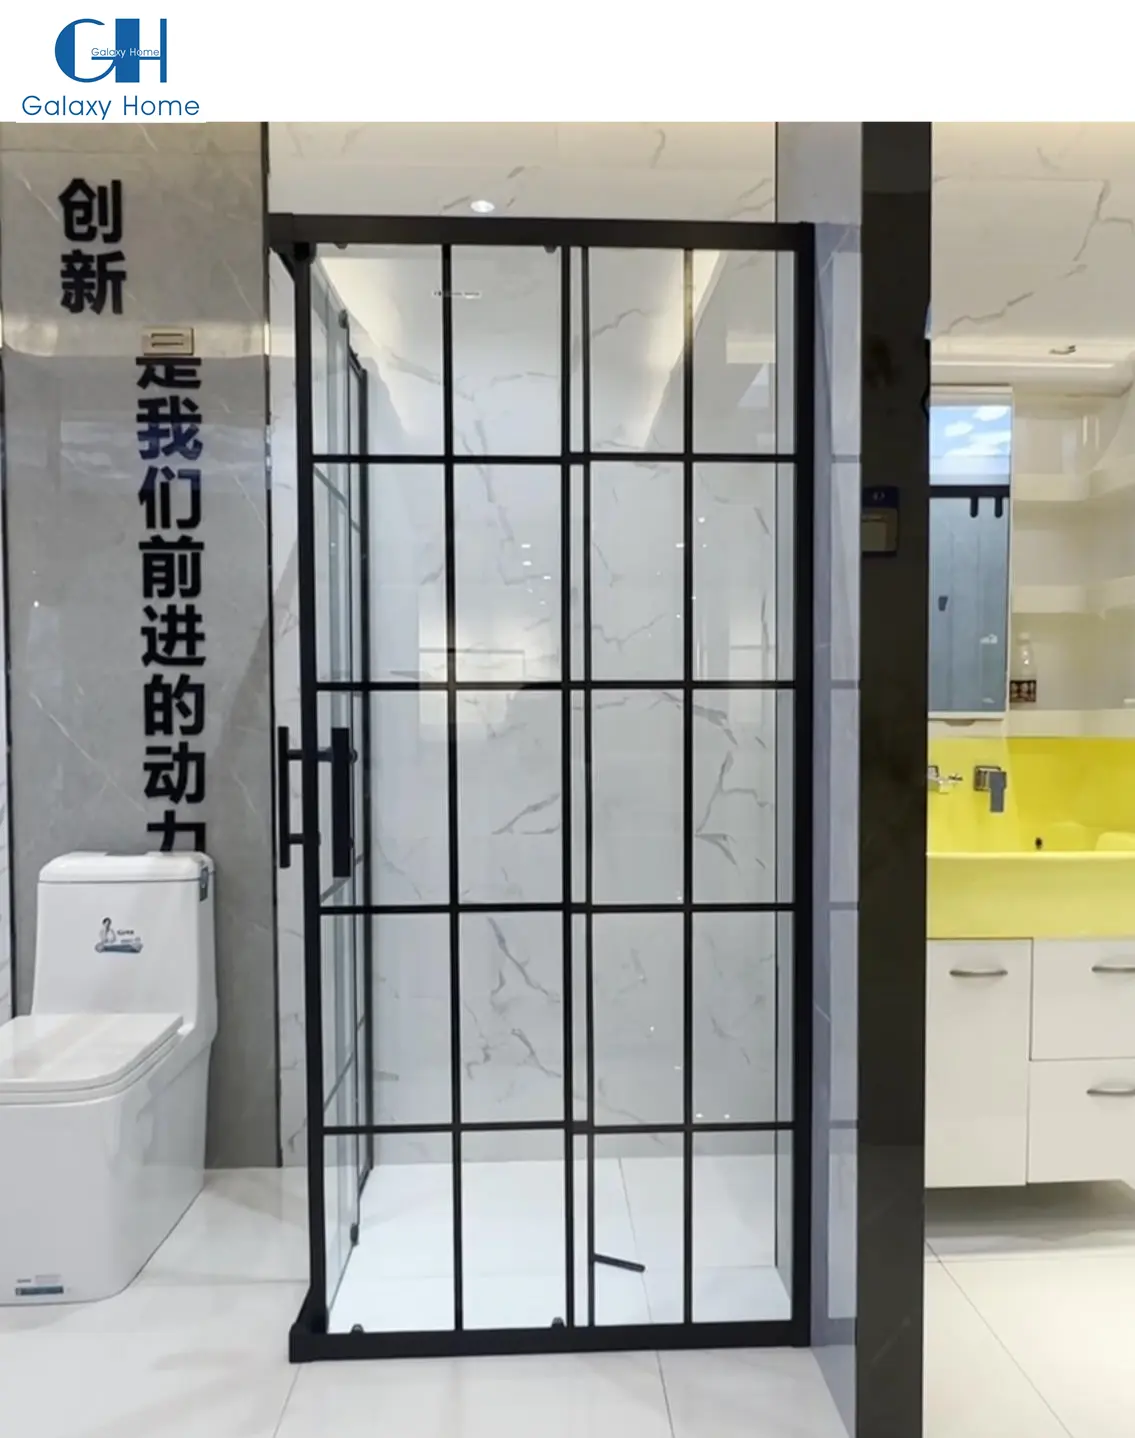 الفرنسية نمط الفولاذ المقاوم للصدأ اثنين باب منزلق لكابينة الاستحمام بالدش الأسود الزجاج المرحاض حمام دش غرفة المقصورة مع الإطار